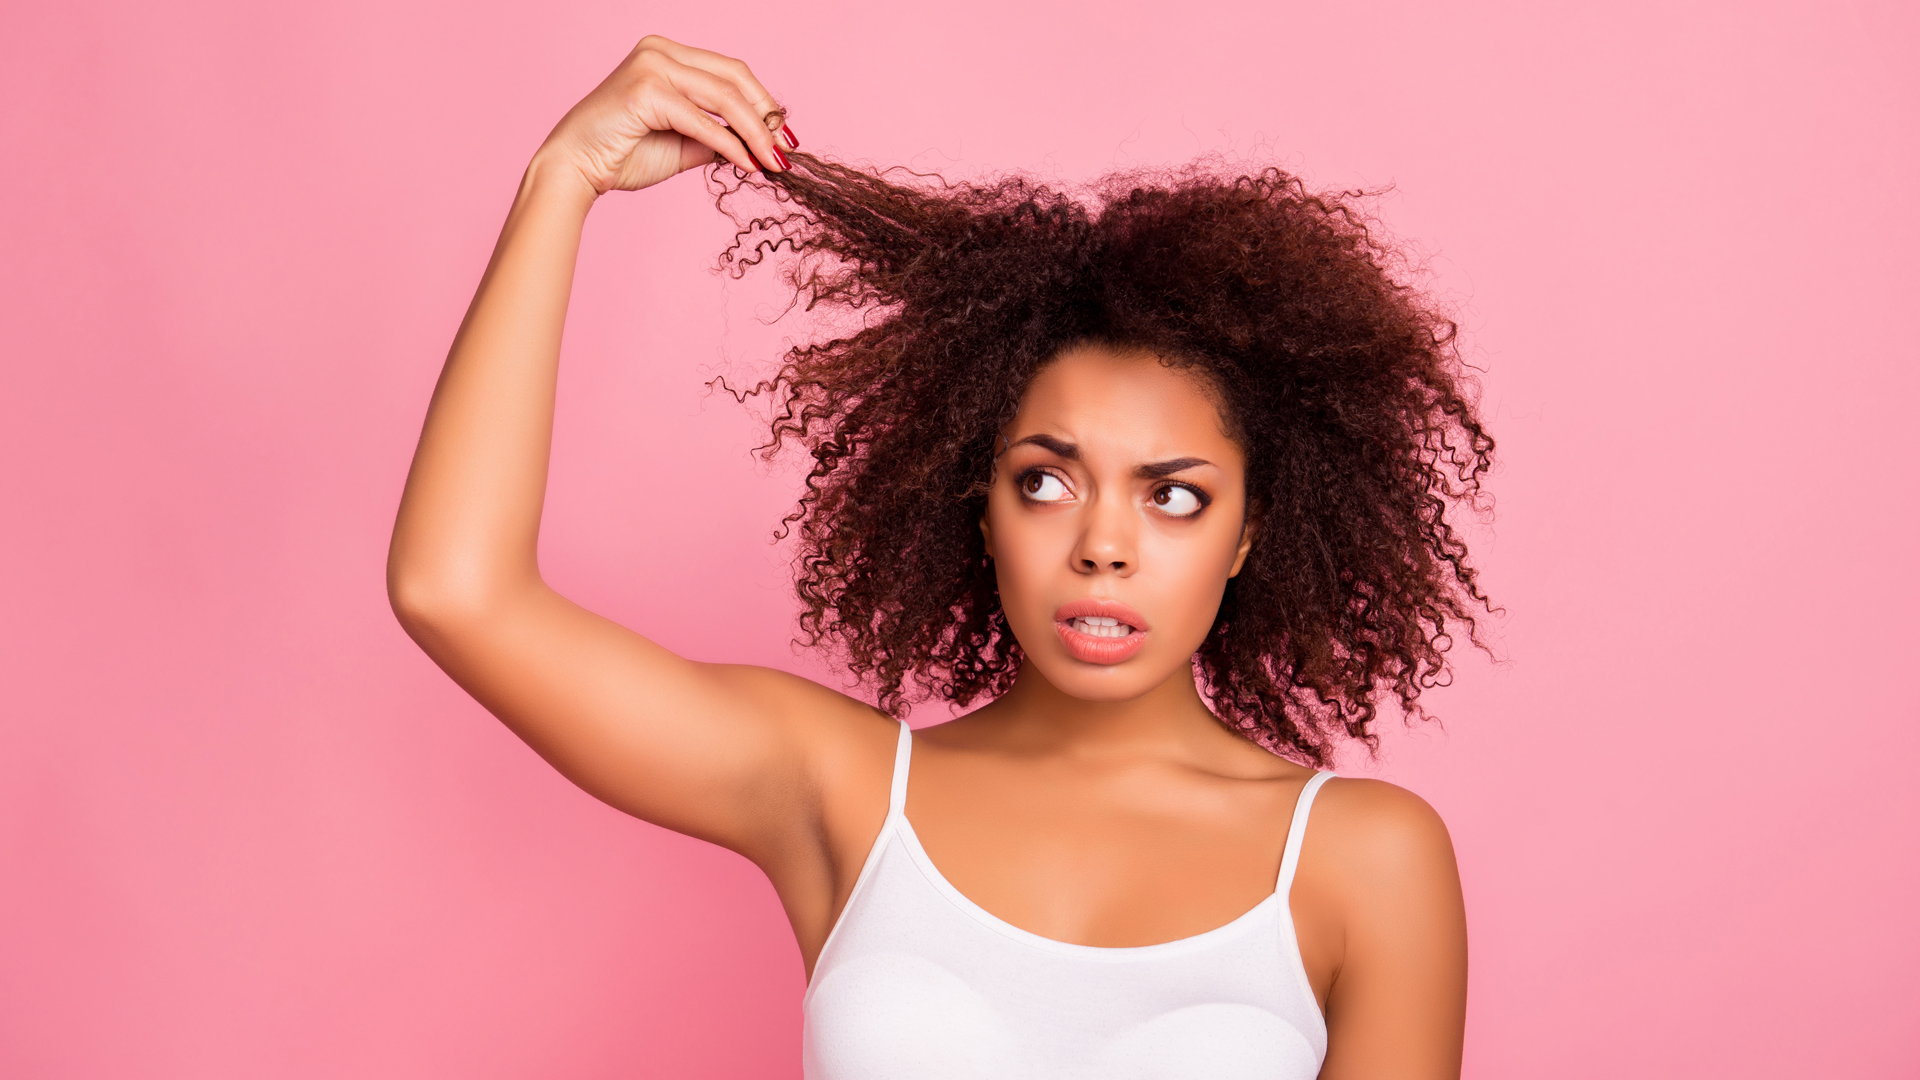 El experto detalló que los cabellos con rulos de por sí ya son secos y necesitan de una hidratación extra (Shutterstock) 